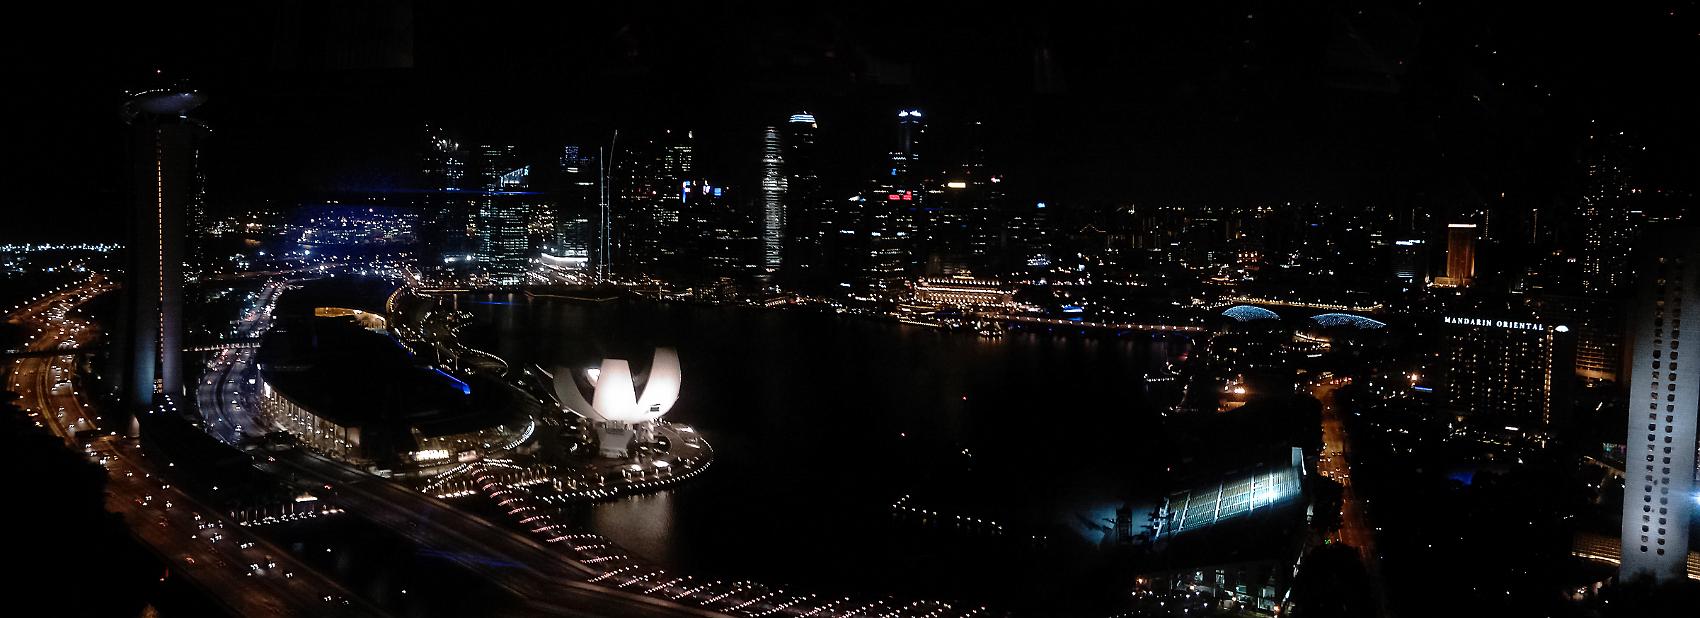 20110621-Singapore-Panorama-3.JPEG